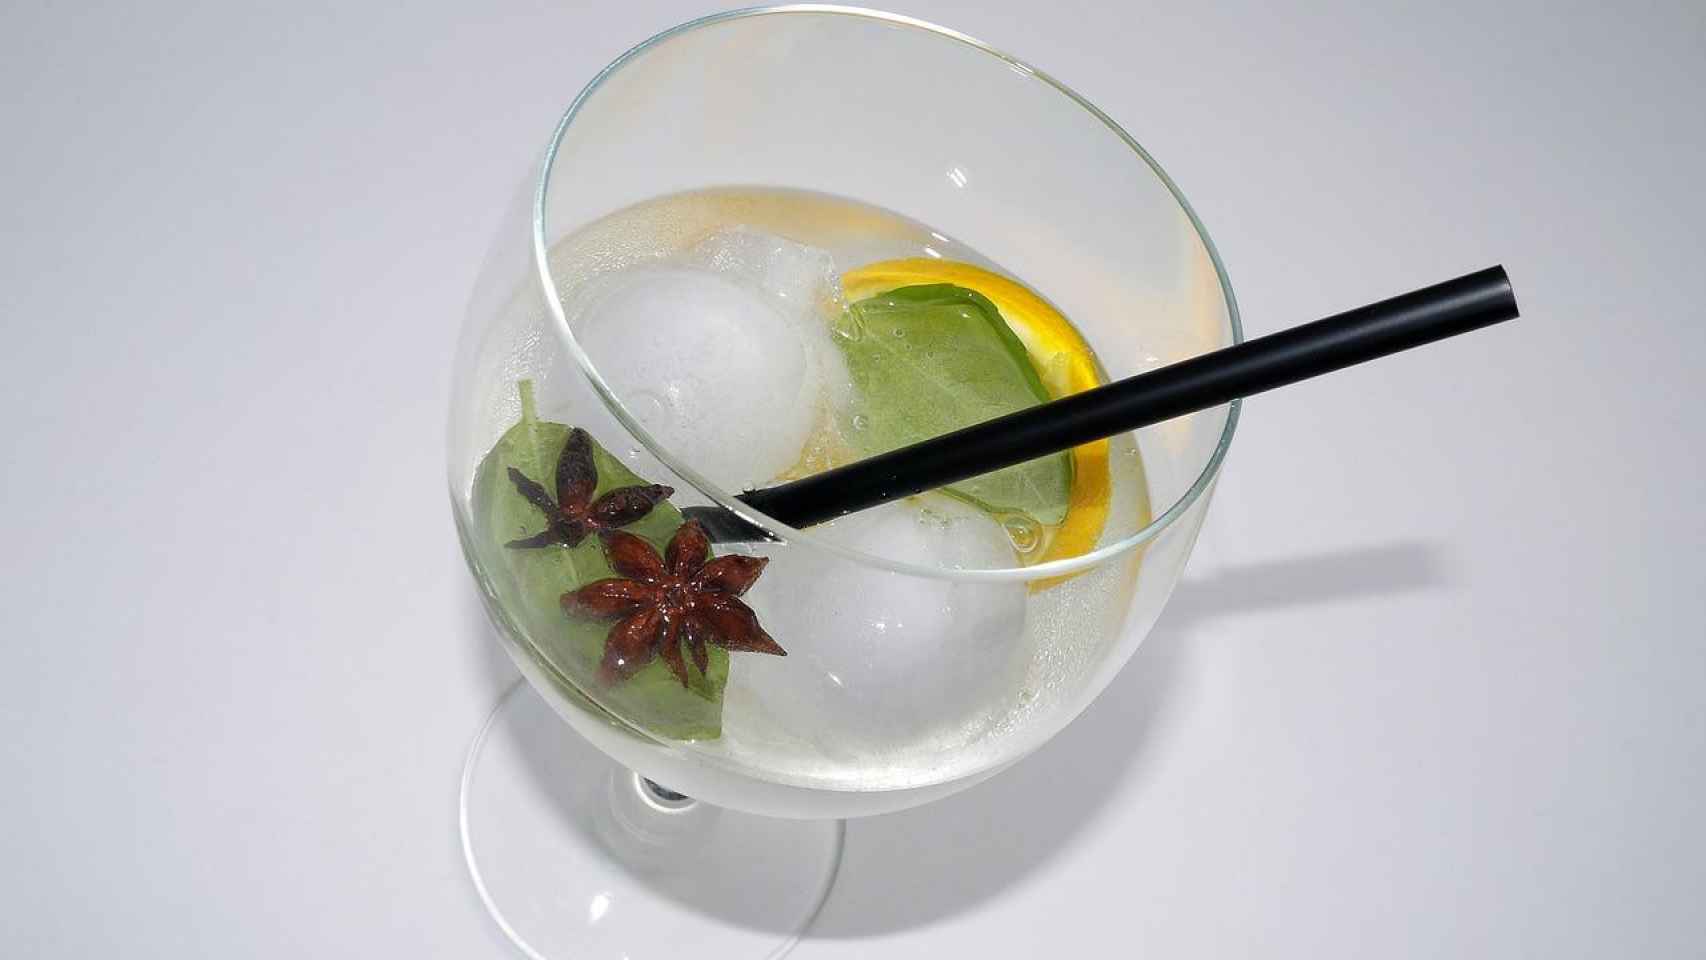 Una copa de los refrescantes gin-tonics, la bebida estrella del after-work en España / PIXABAY